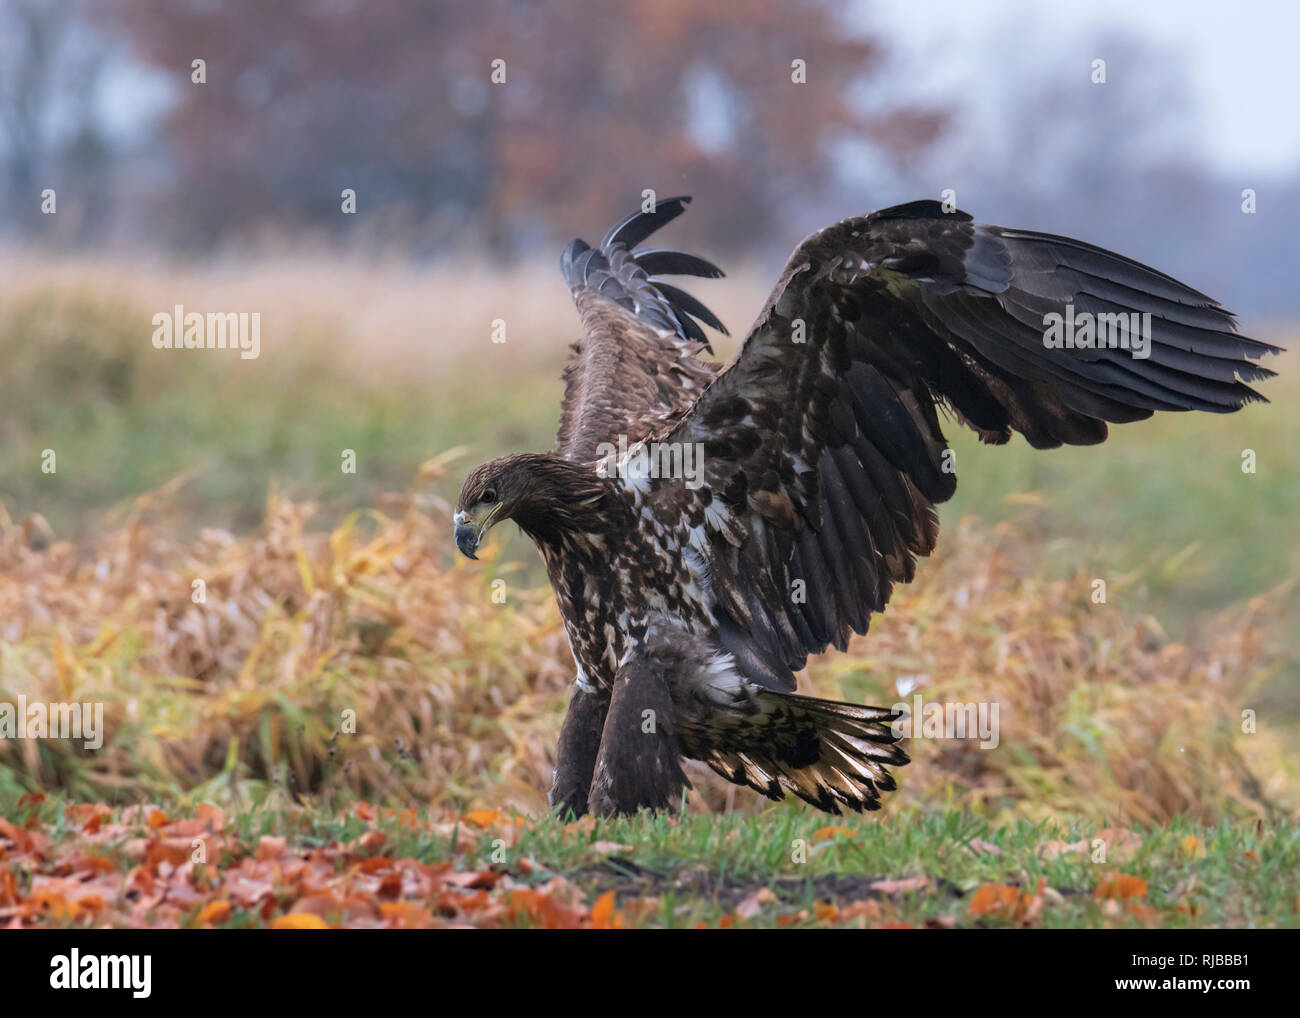 White-tailed eagle, bird of prey Stock Photo